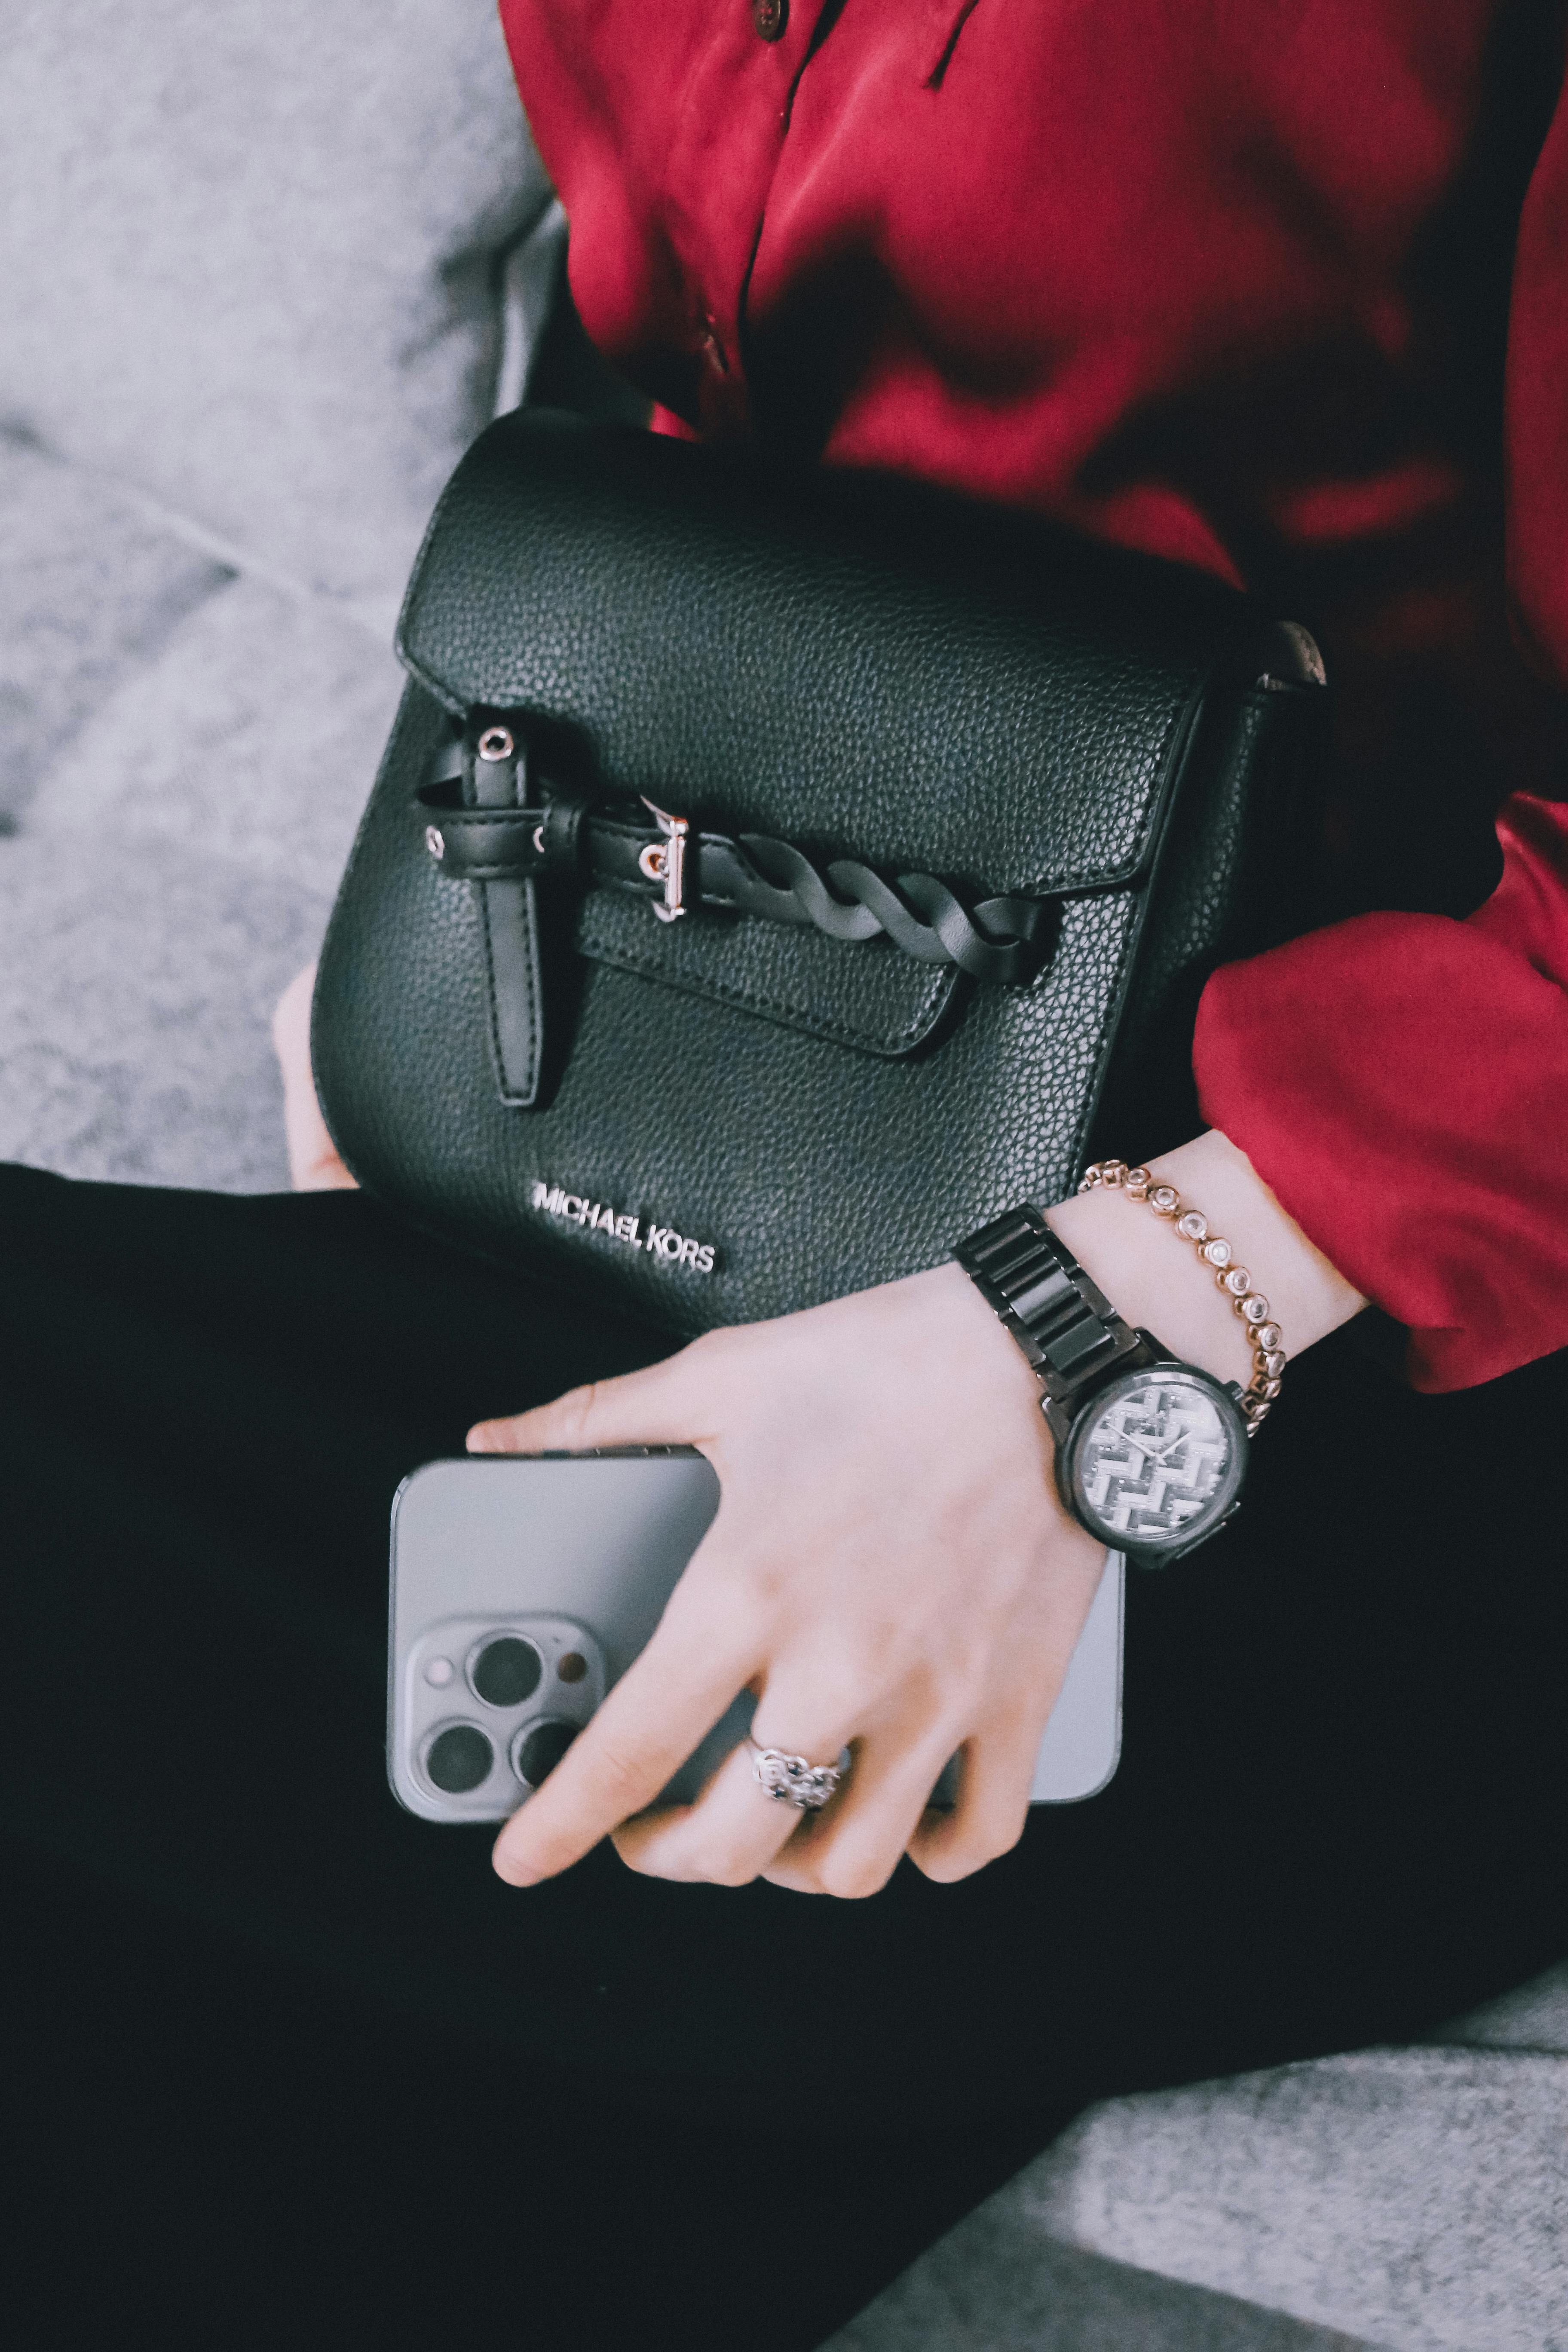 Une femme avec une montre, des bijoux, un téléphone et un sac coûteux | Source : Pexels